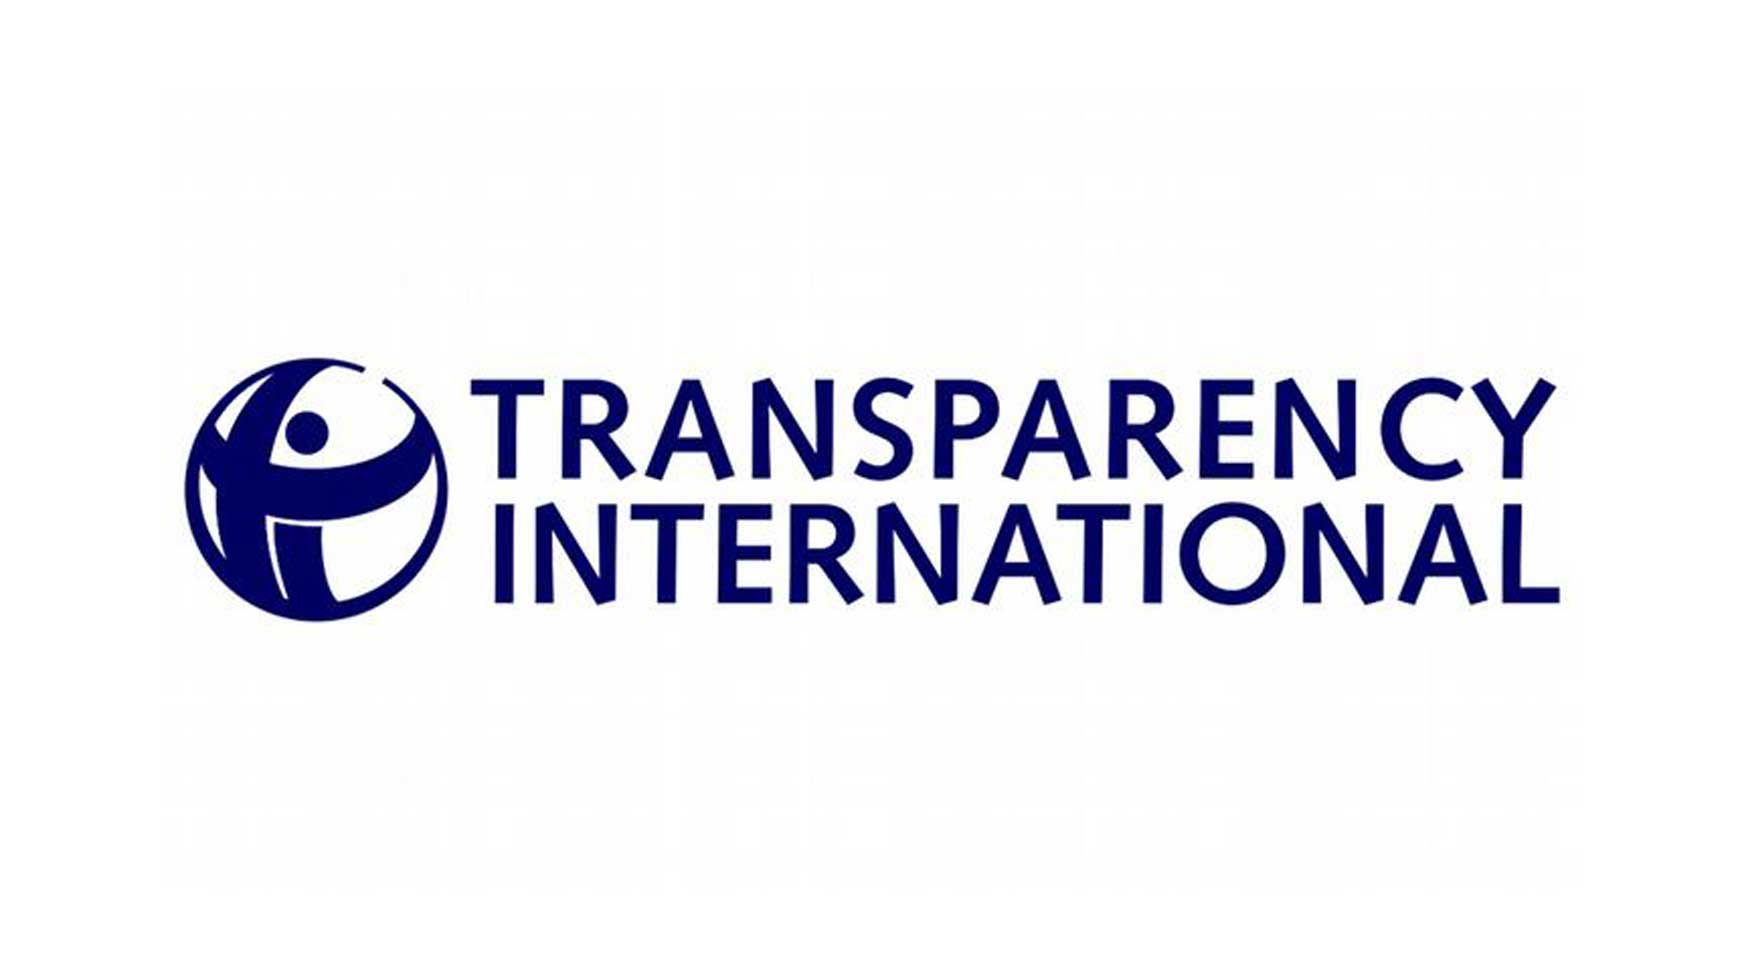 ТОП-10 найболючіших корупційних проблем в Україні за версією Transparency International